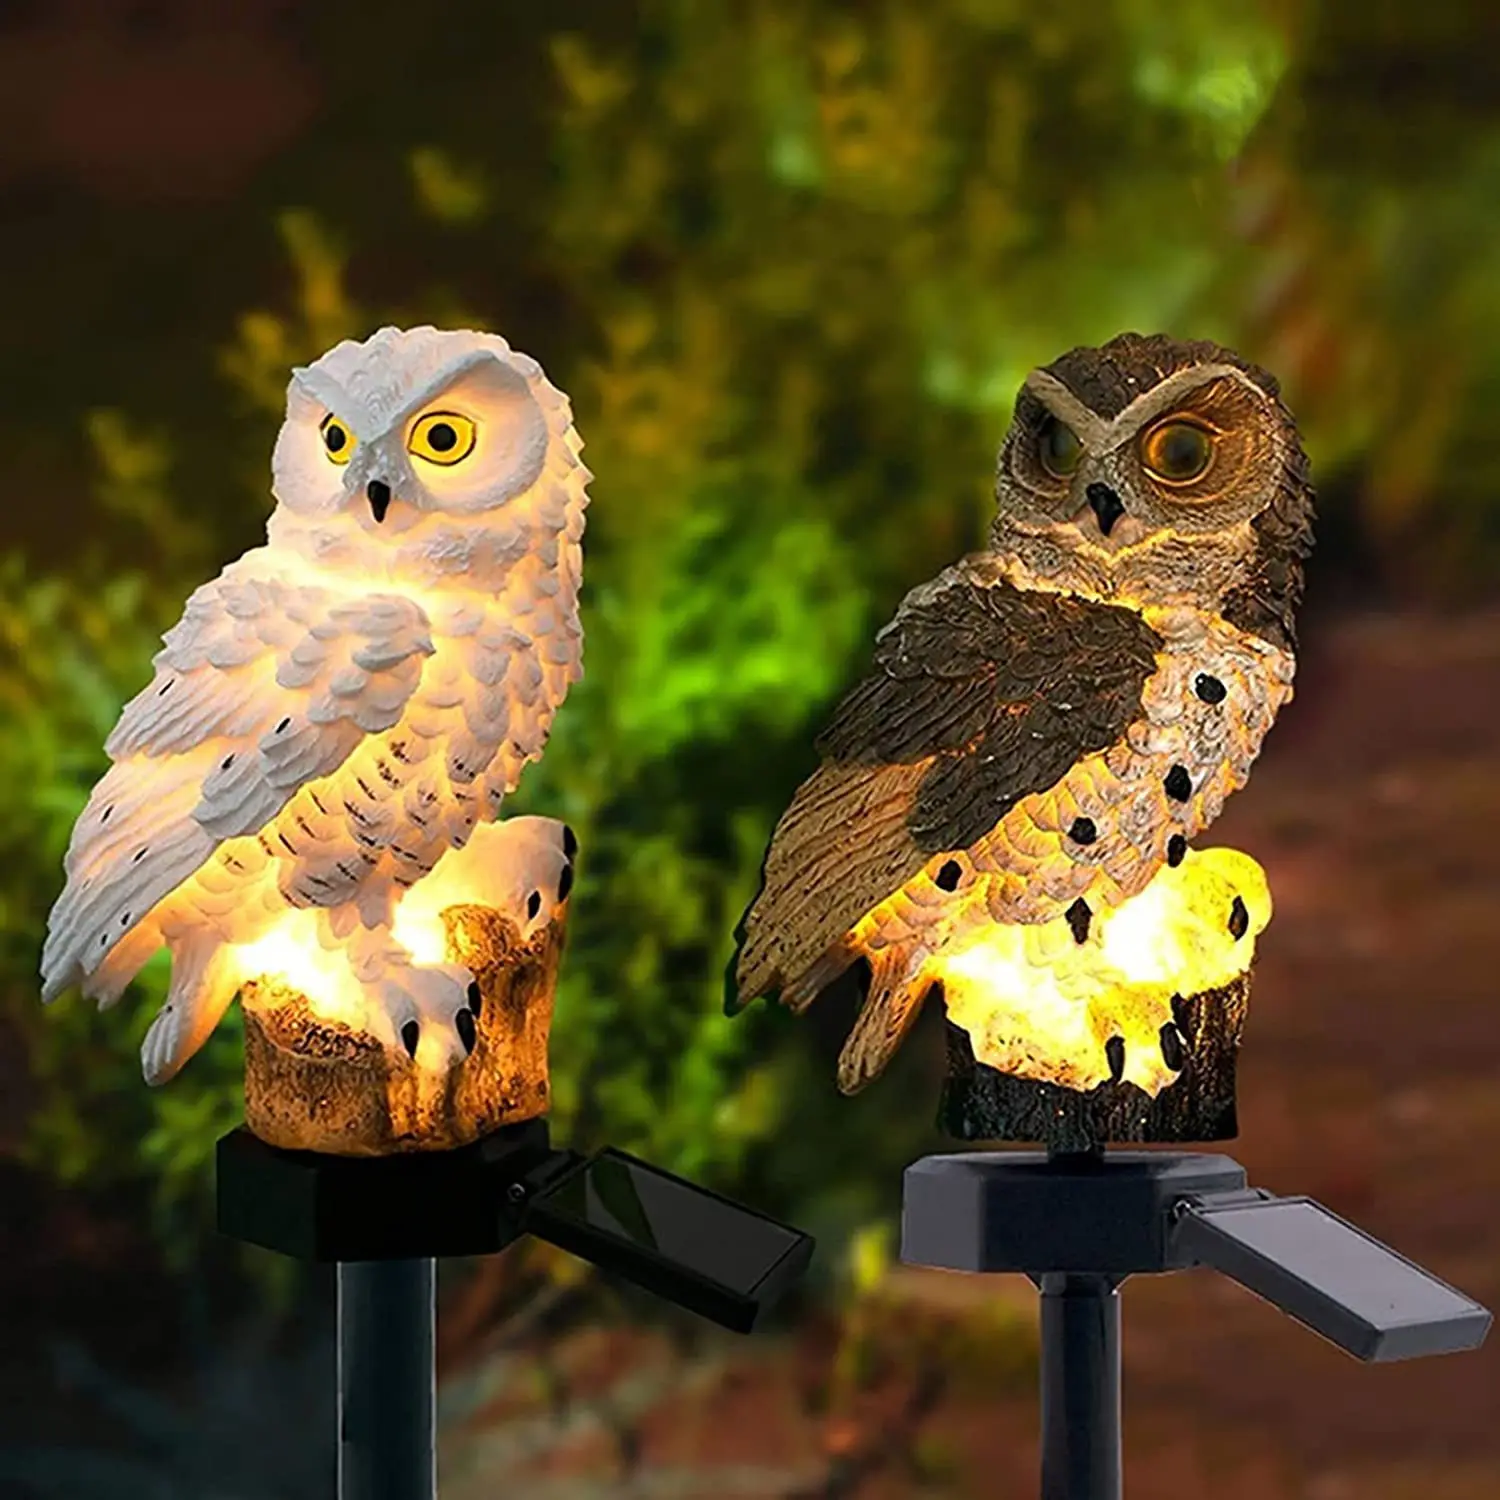 

Owl Lights Outdoor Lighting Decor Long Lasting Ground Plug Solar Lamp for Outside Garden Stake Decor